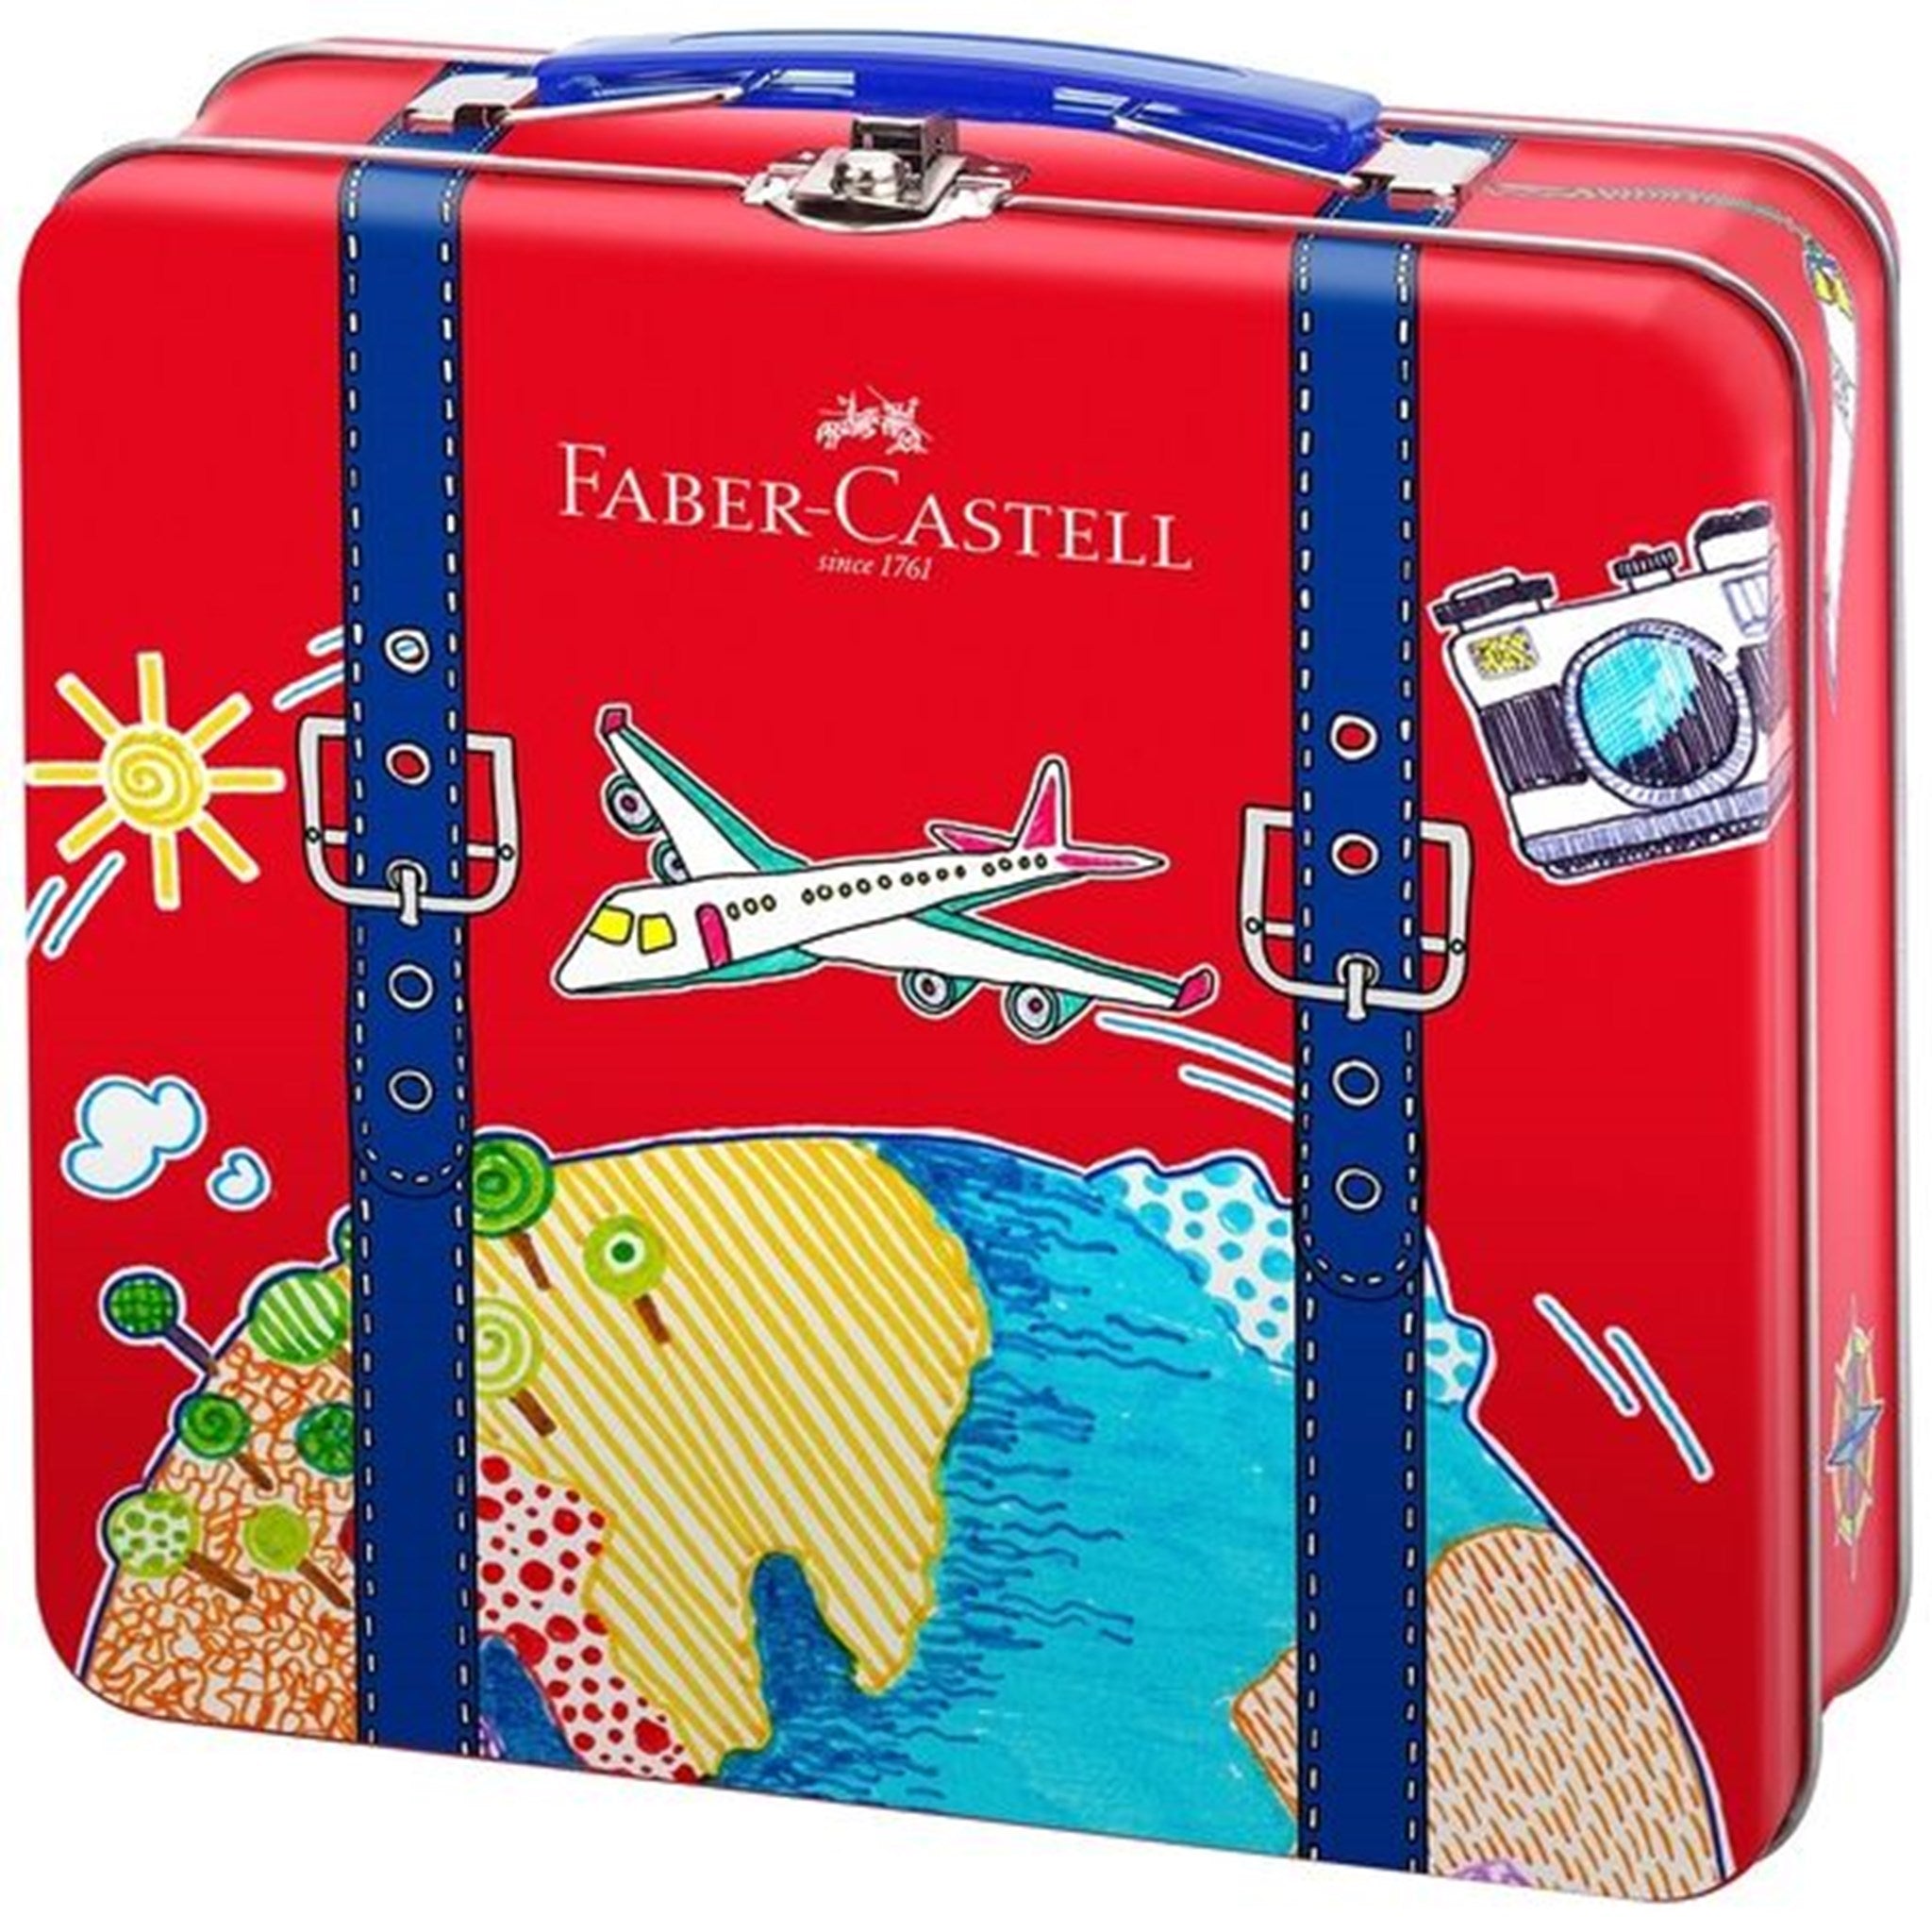 Faber-Castell Fibre-tip Pens Suitcase